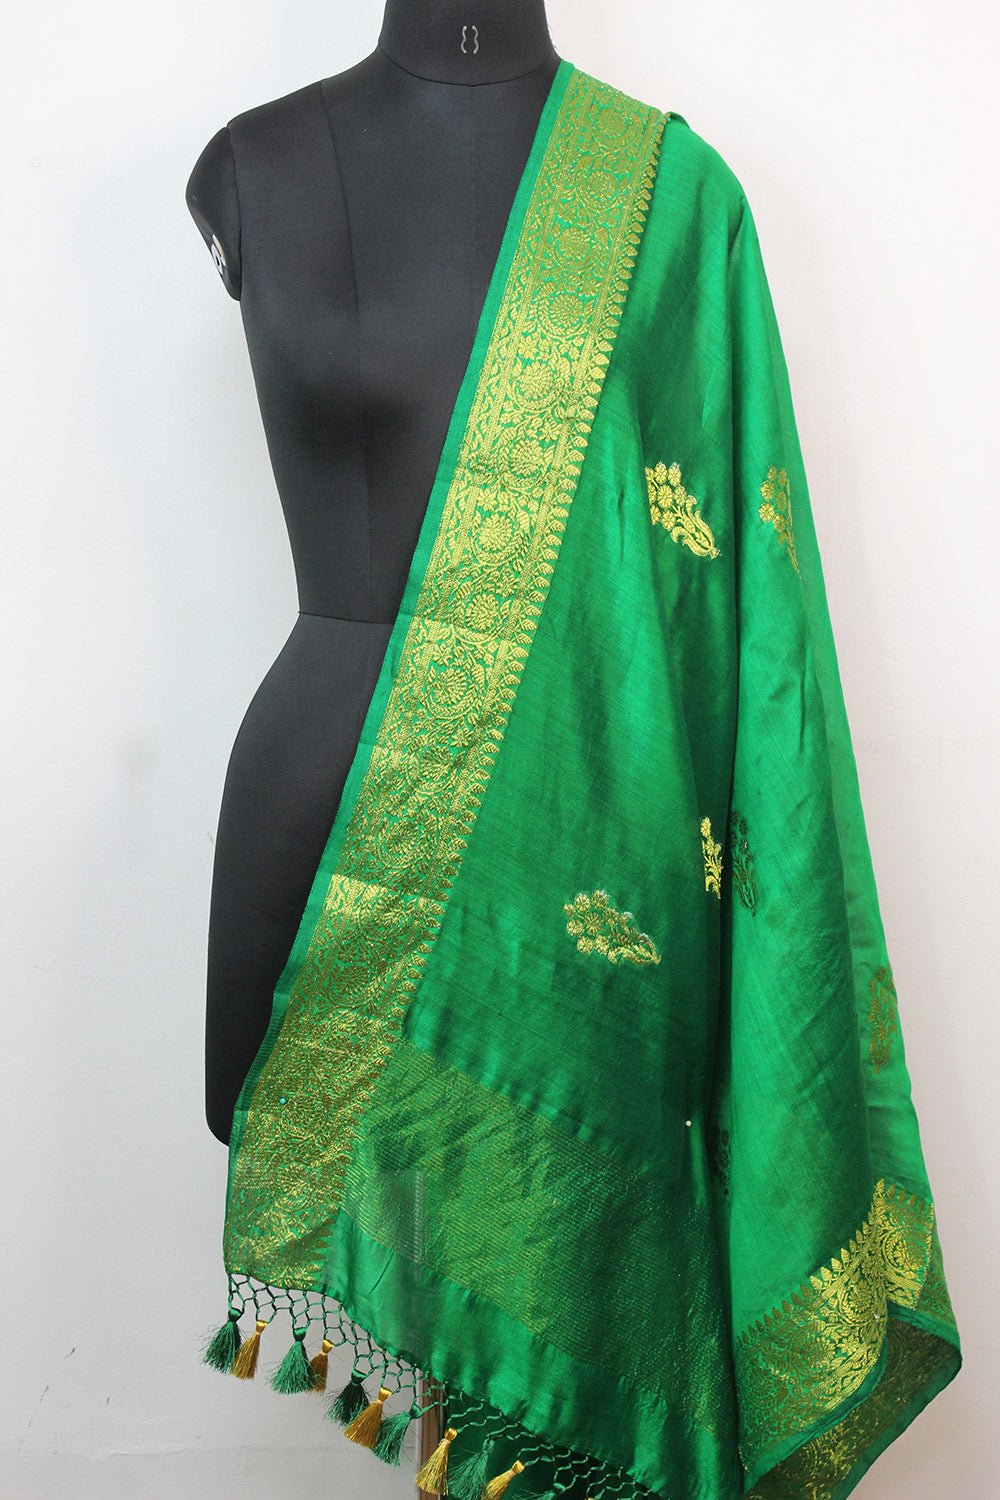 Green Handloom Banarasi Chiniya Silk Boota Design Dupatta - Luxurion World